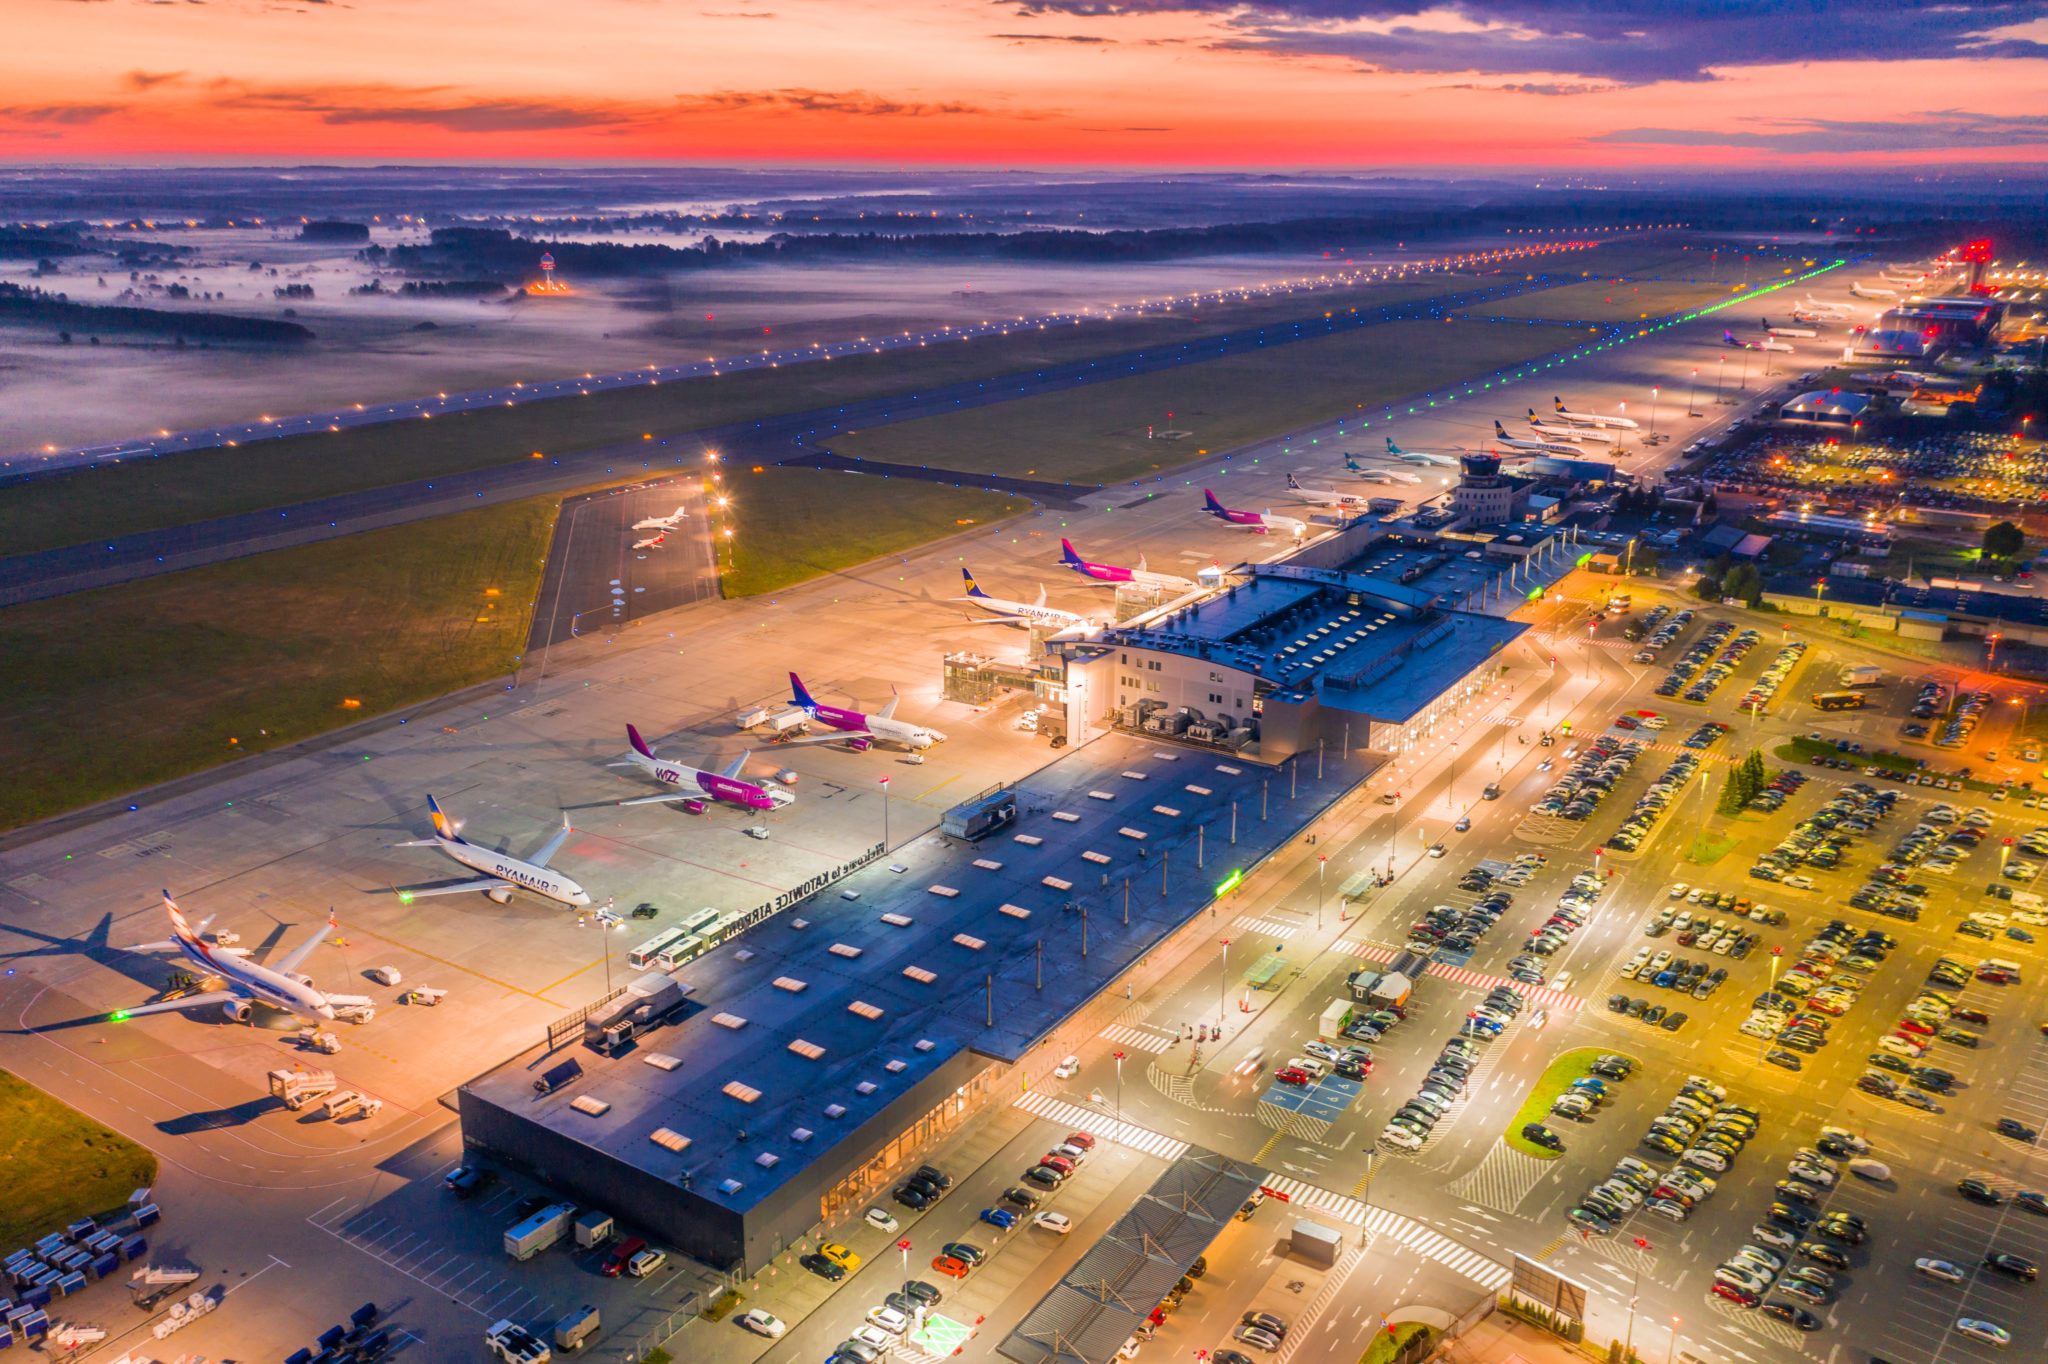 Widok na lotnisko z lotu ptaka. Teren lotniska oświetlony lampami, kilka samolotów stojących na płycie lotniska, w tle kolorowy wschód słońca.